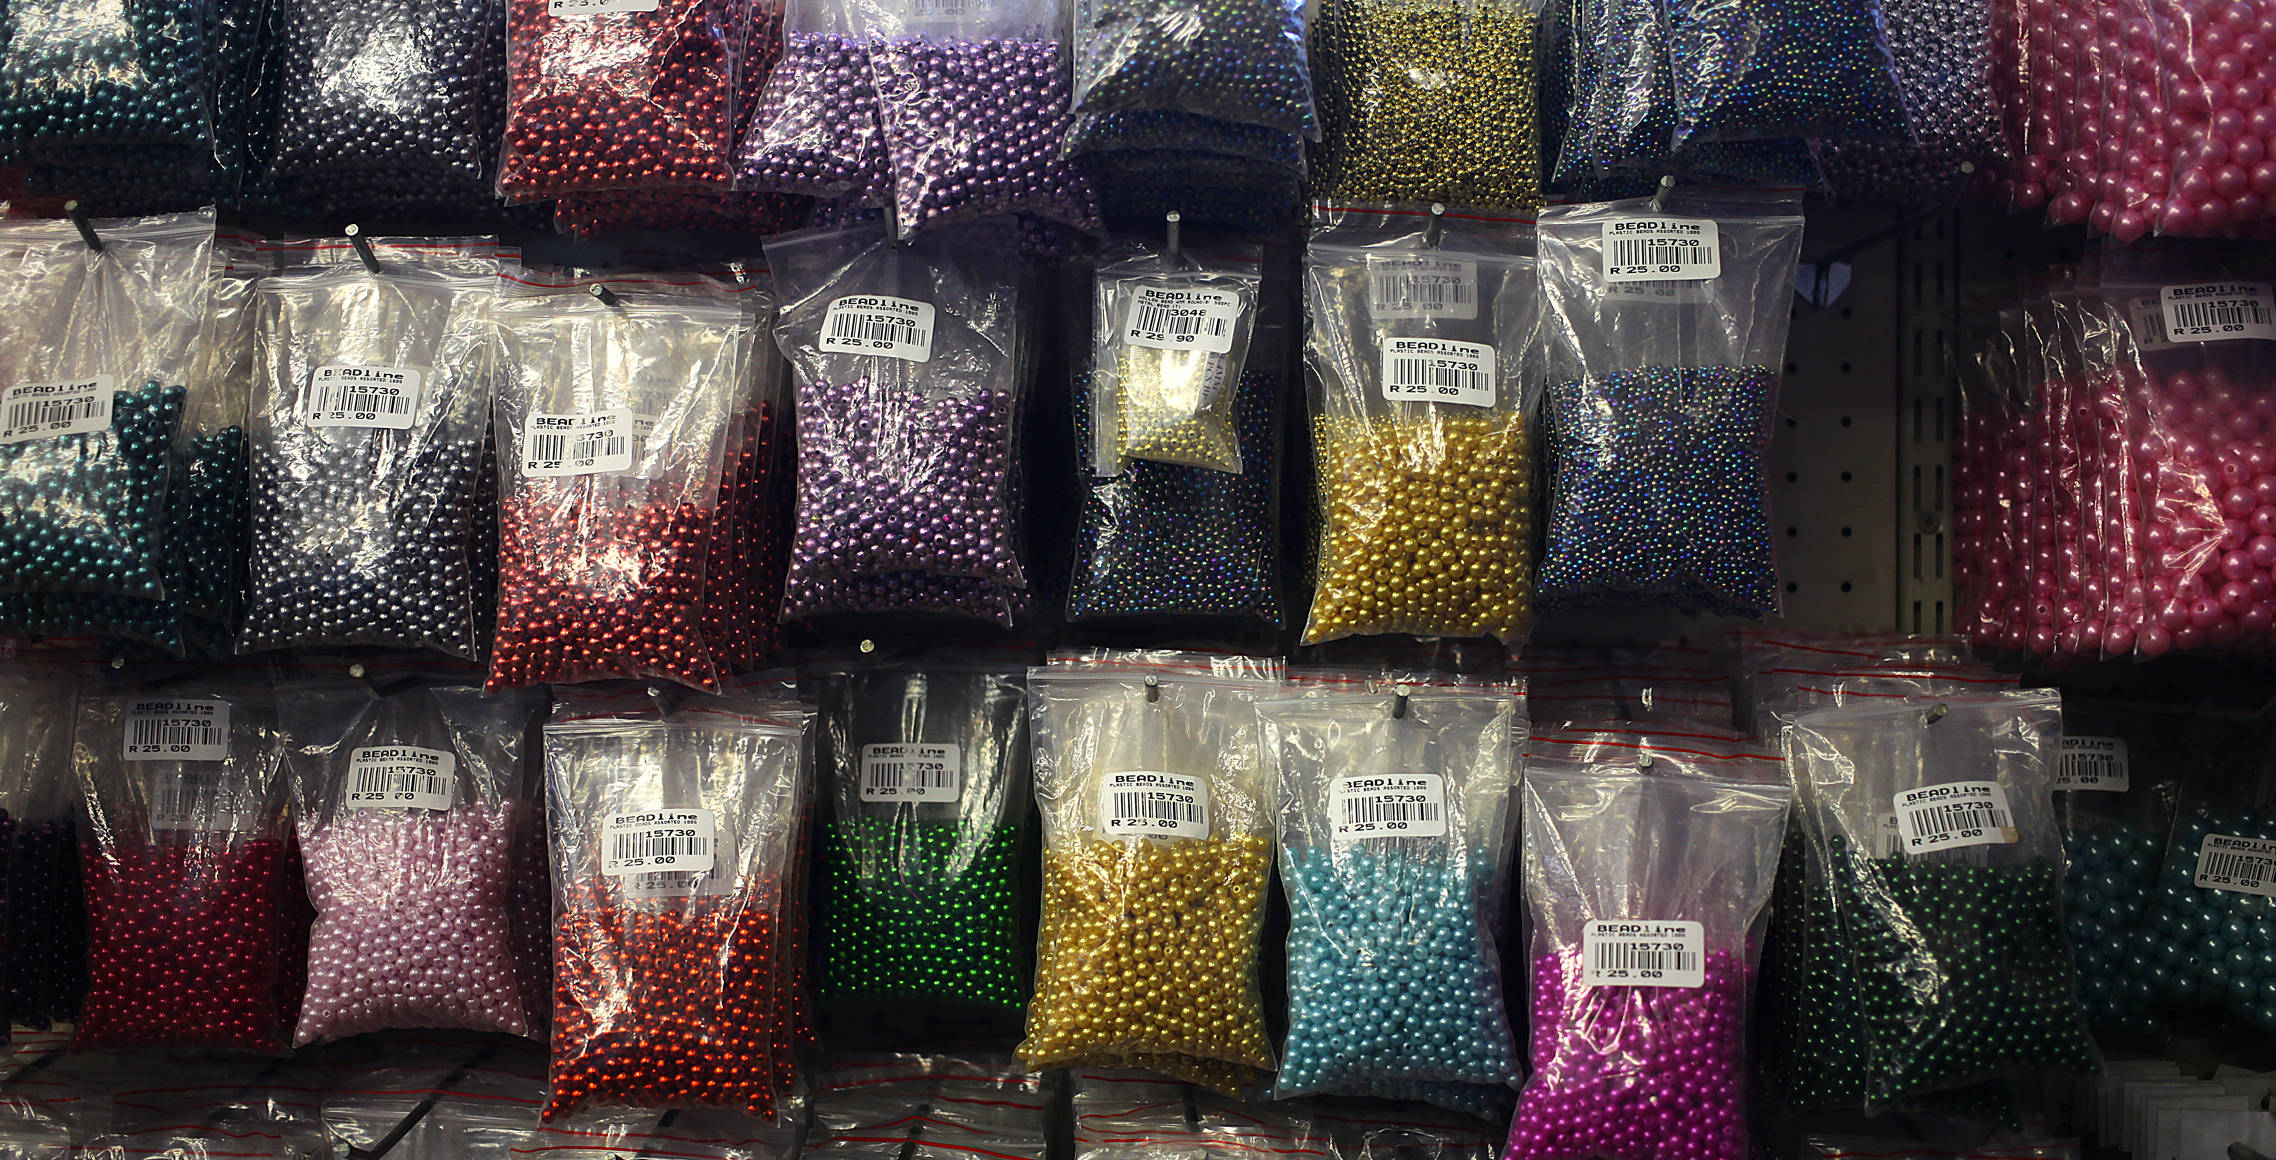 online bead shop